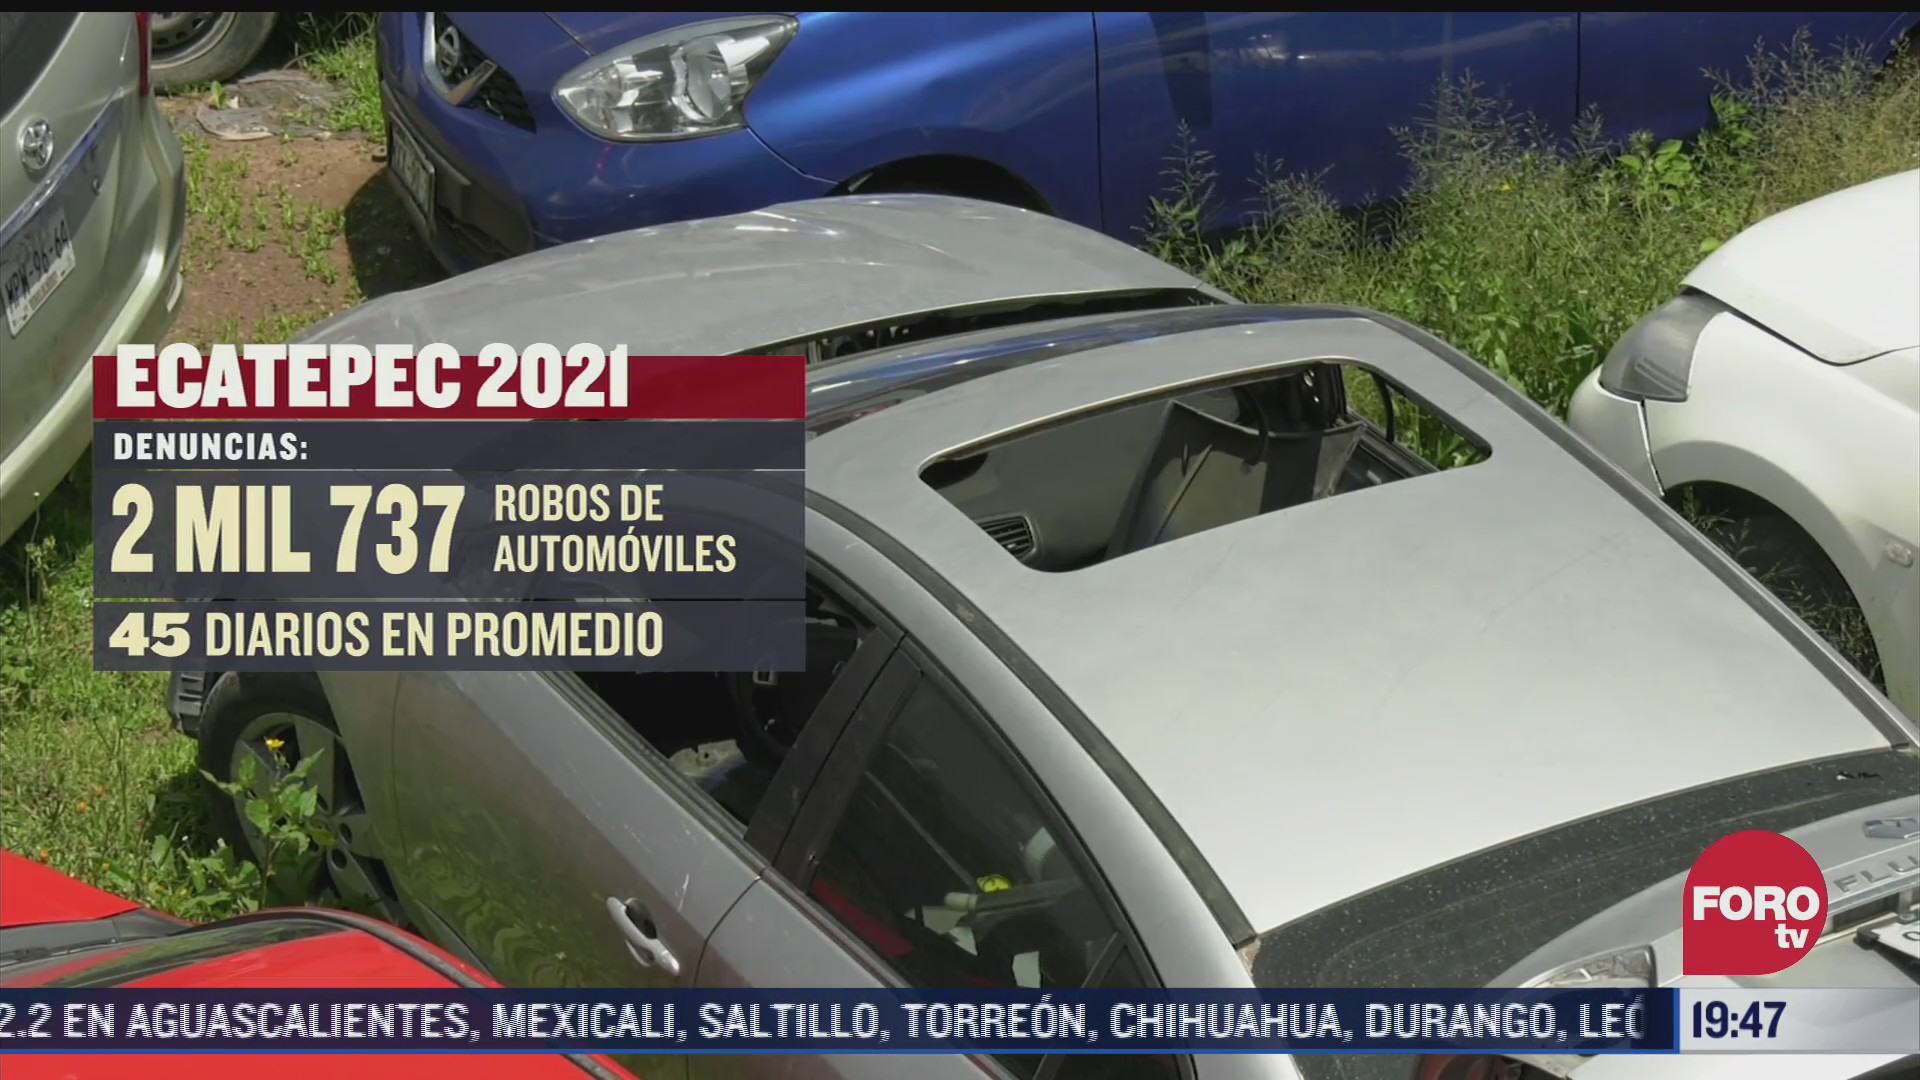 ecatepec segundo lugar en robo de autos a nivel nacional